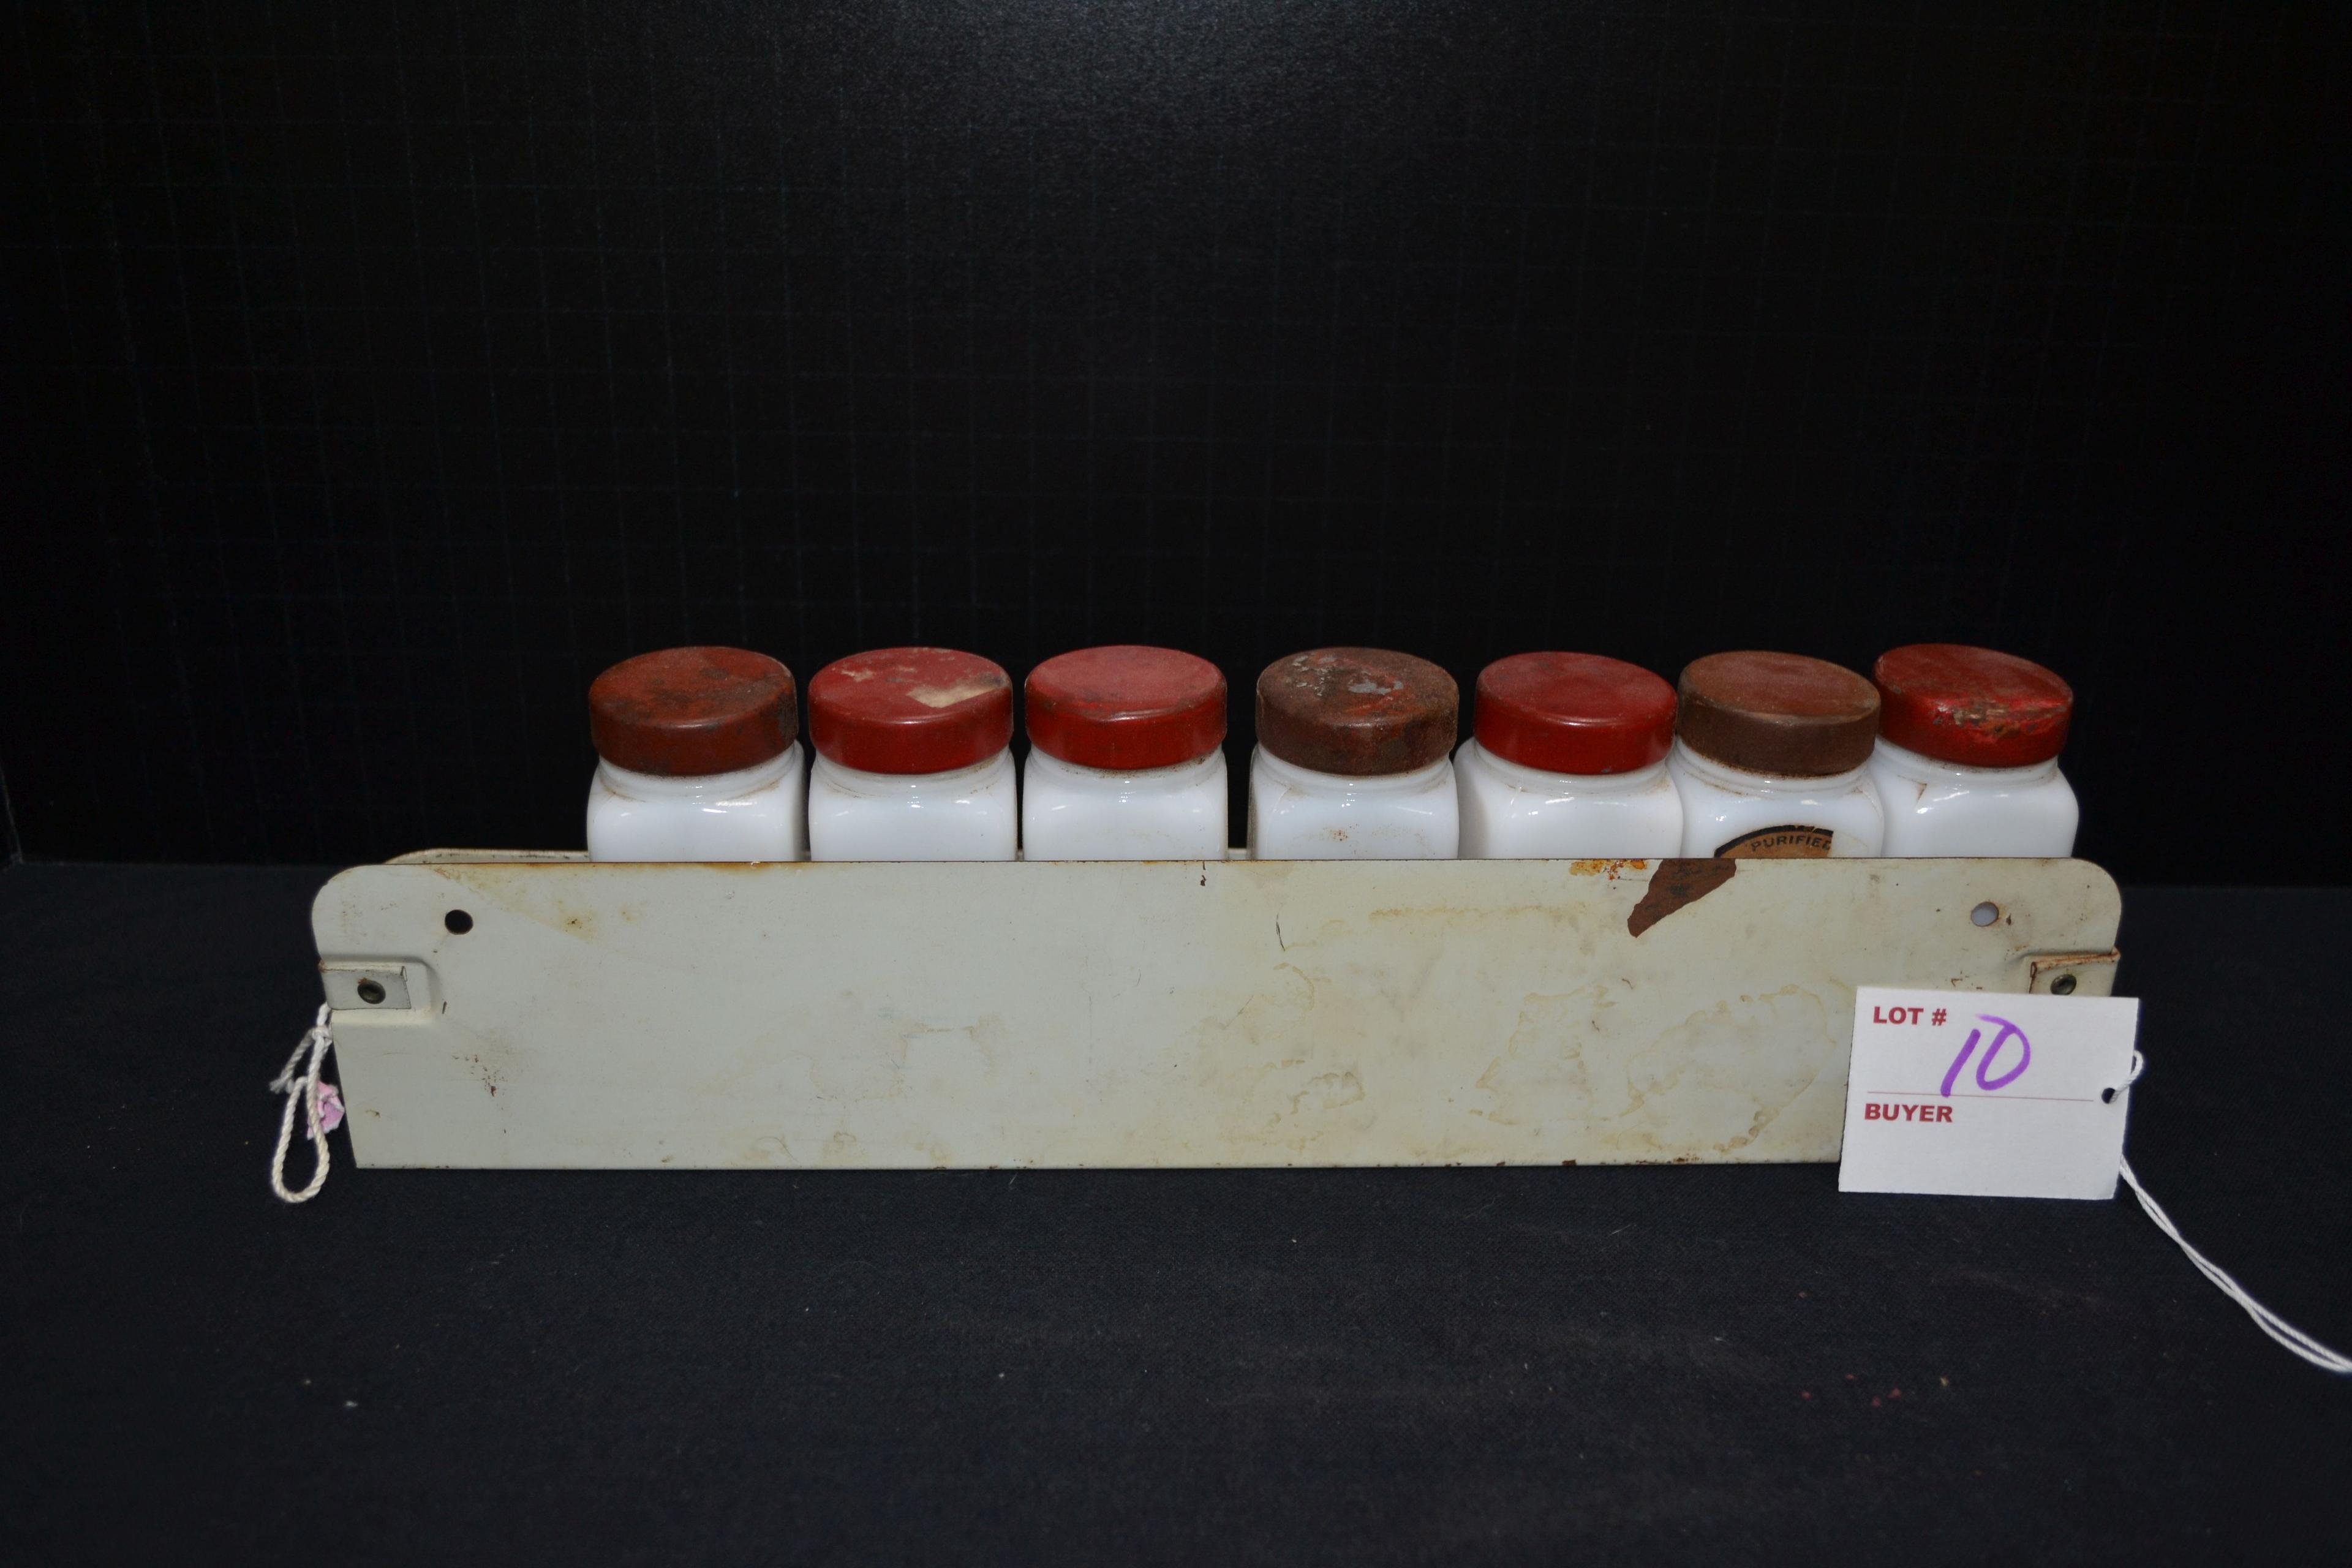 Vintage Spice Rack with 7 Milk Glass Lidded Jars; Some Original Labels